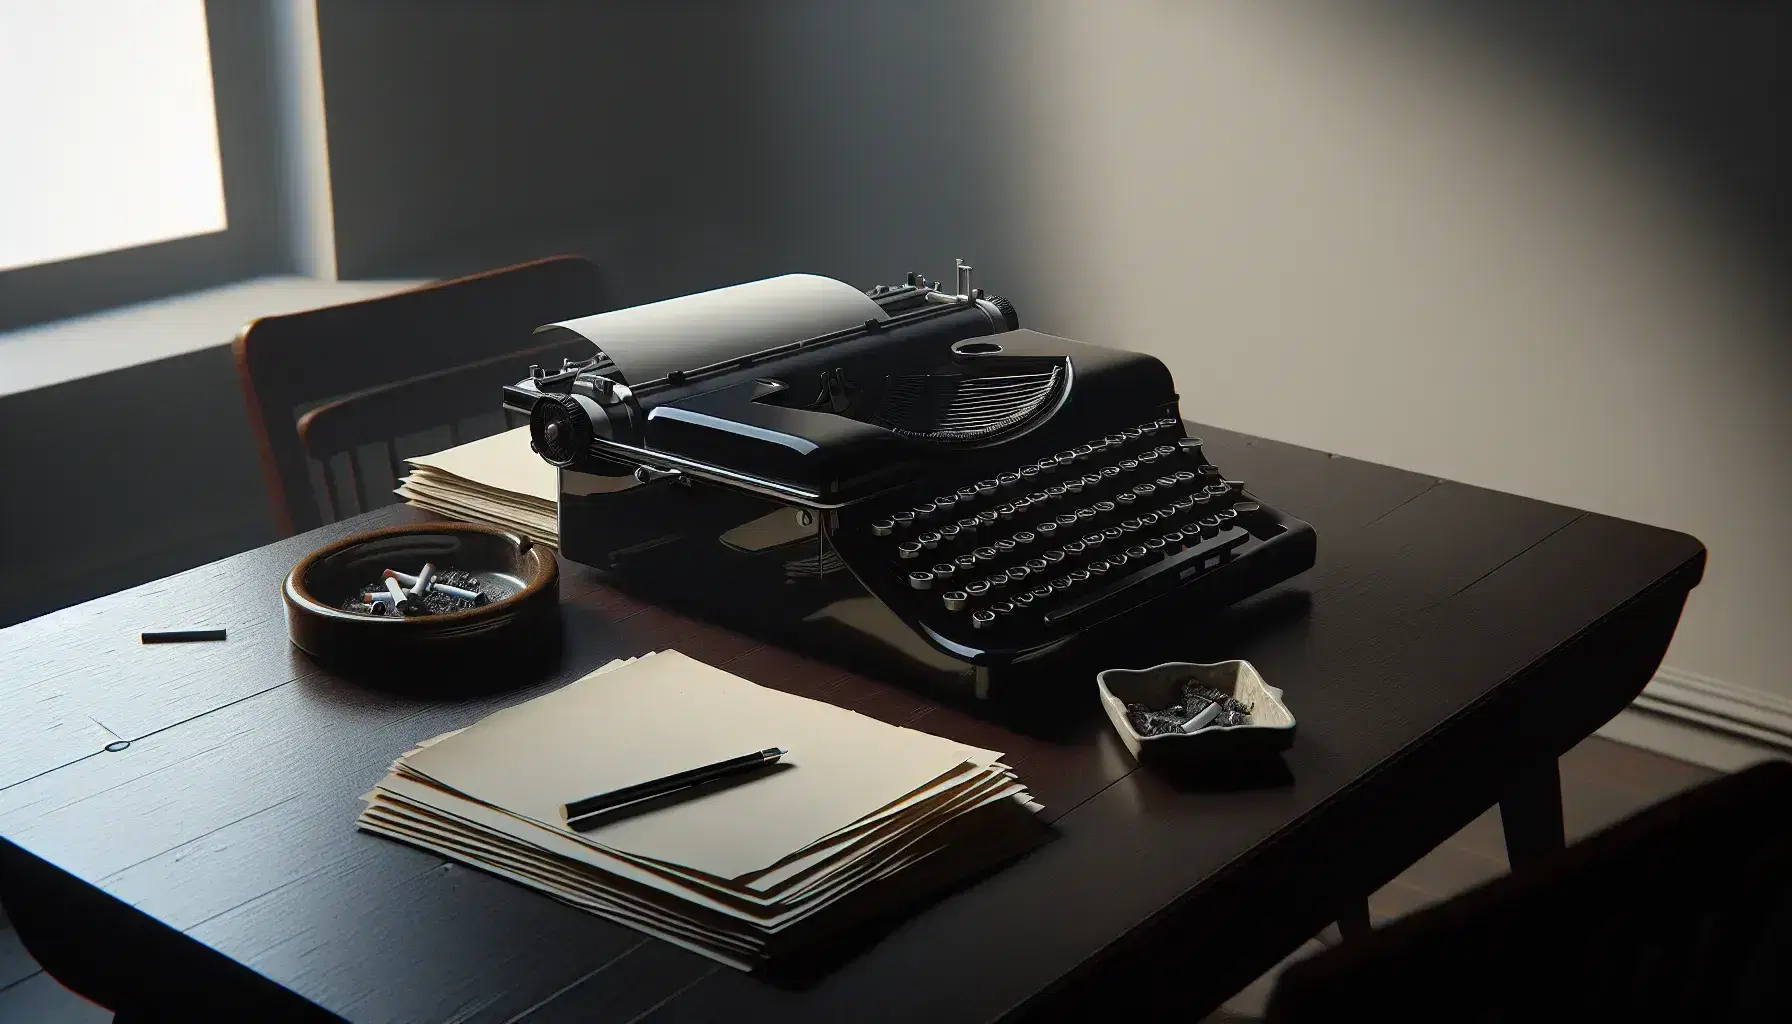 Máquina de escribir antigua negra con teclas blancas sobre mesa de madera oscura, papeles desordenados al lado y cenicero de cerámica sin cigarrillos.